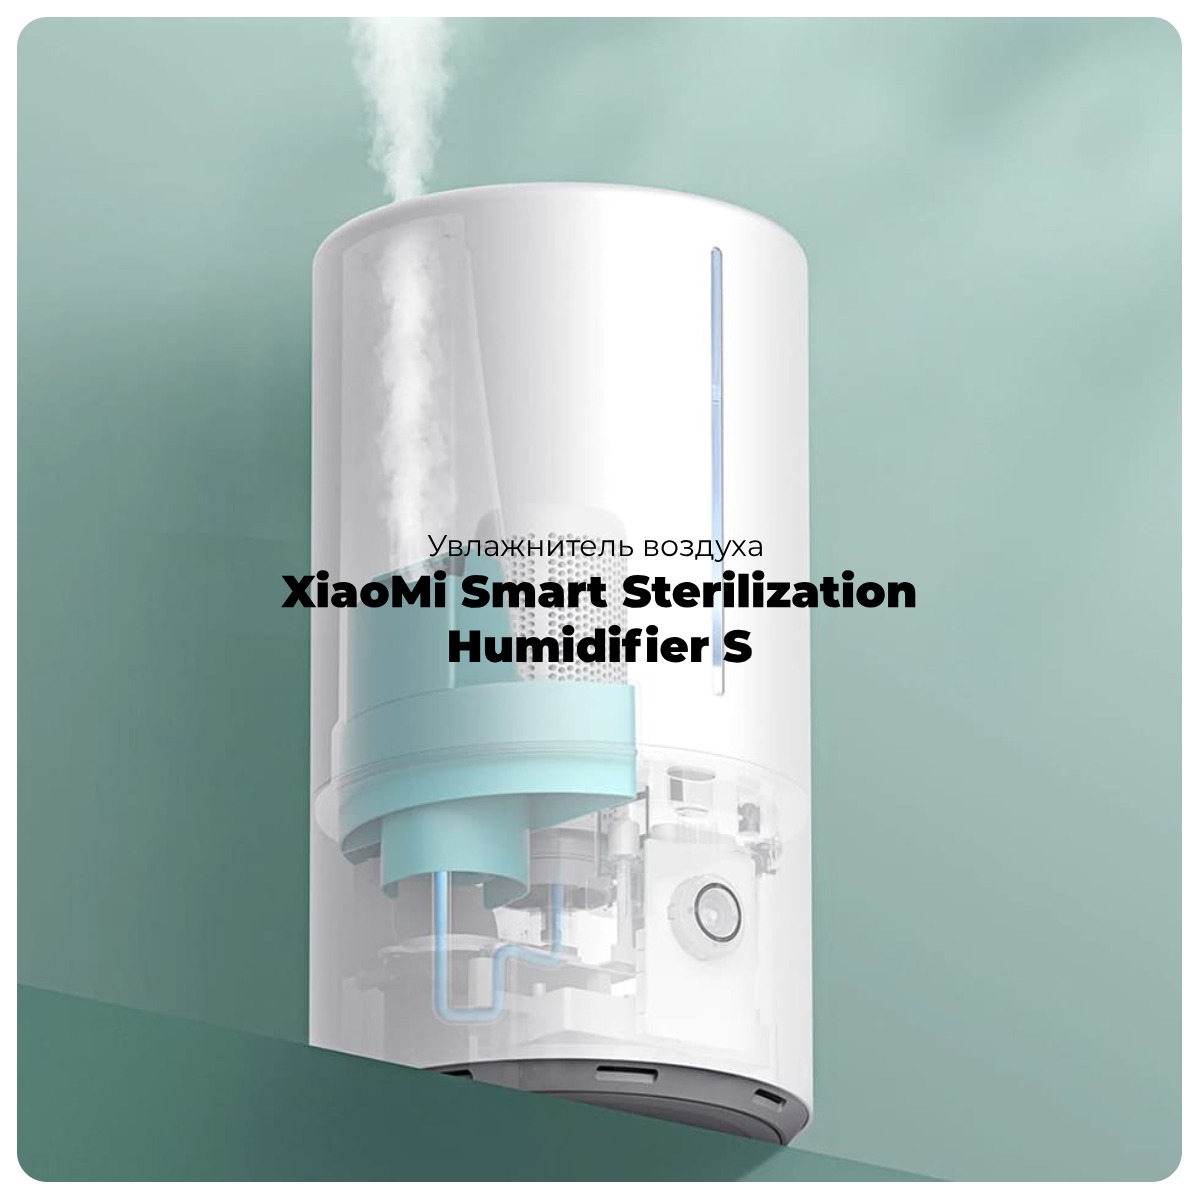 XiaoMi-Smart-Sterilization-Humidifier-S-01